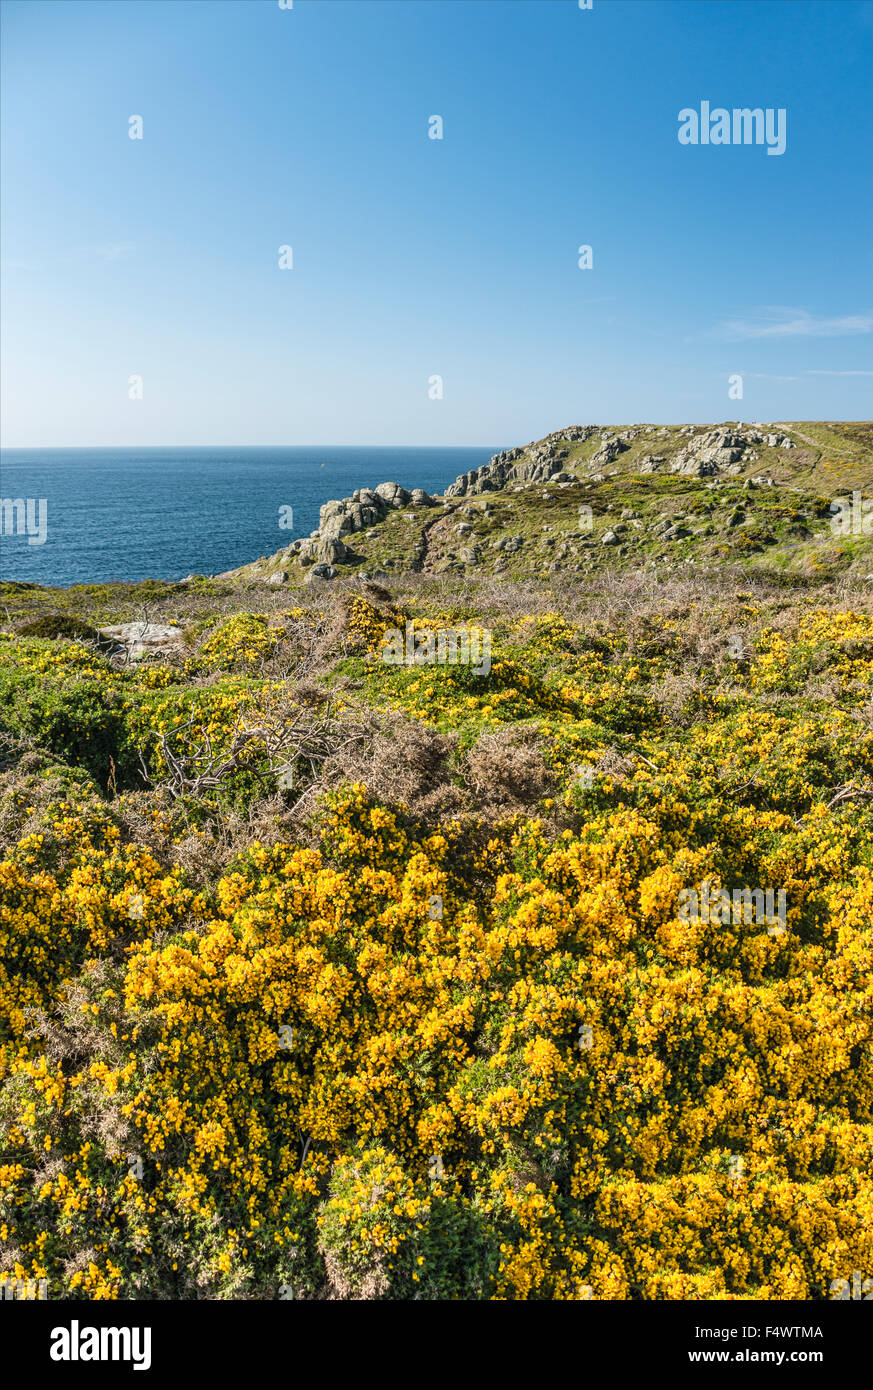 Fiore giallo Gorse in un paesaggio costiero panoramico a Lands End, Cornovaglia, Inghilterra, Regno Unito Foto Stock